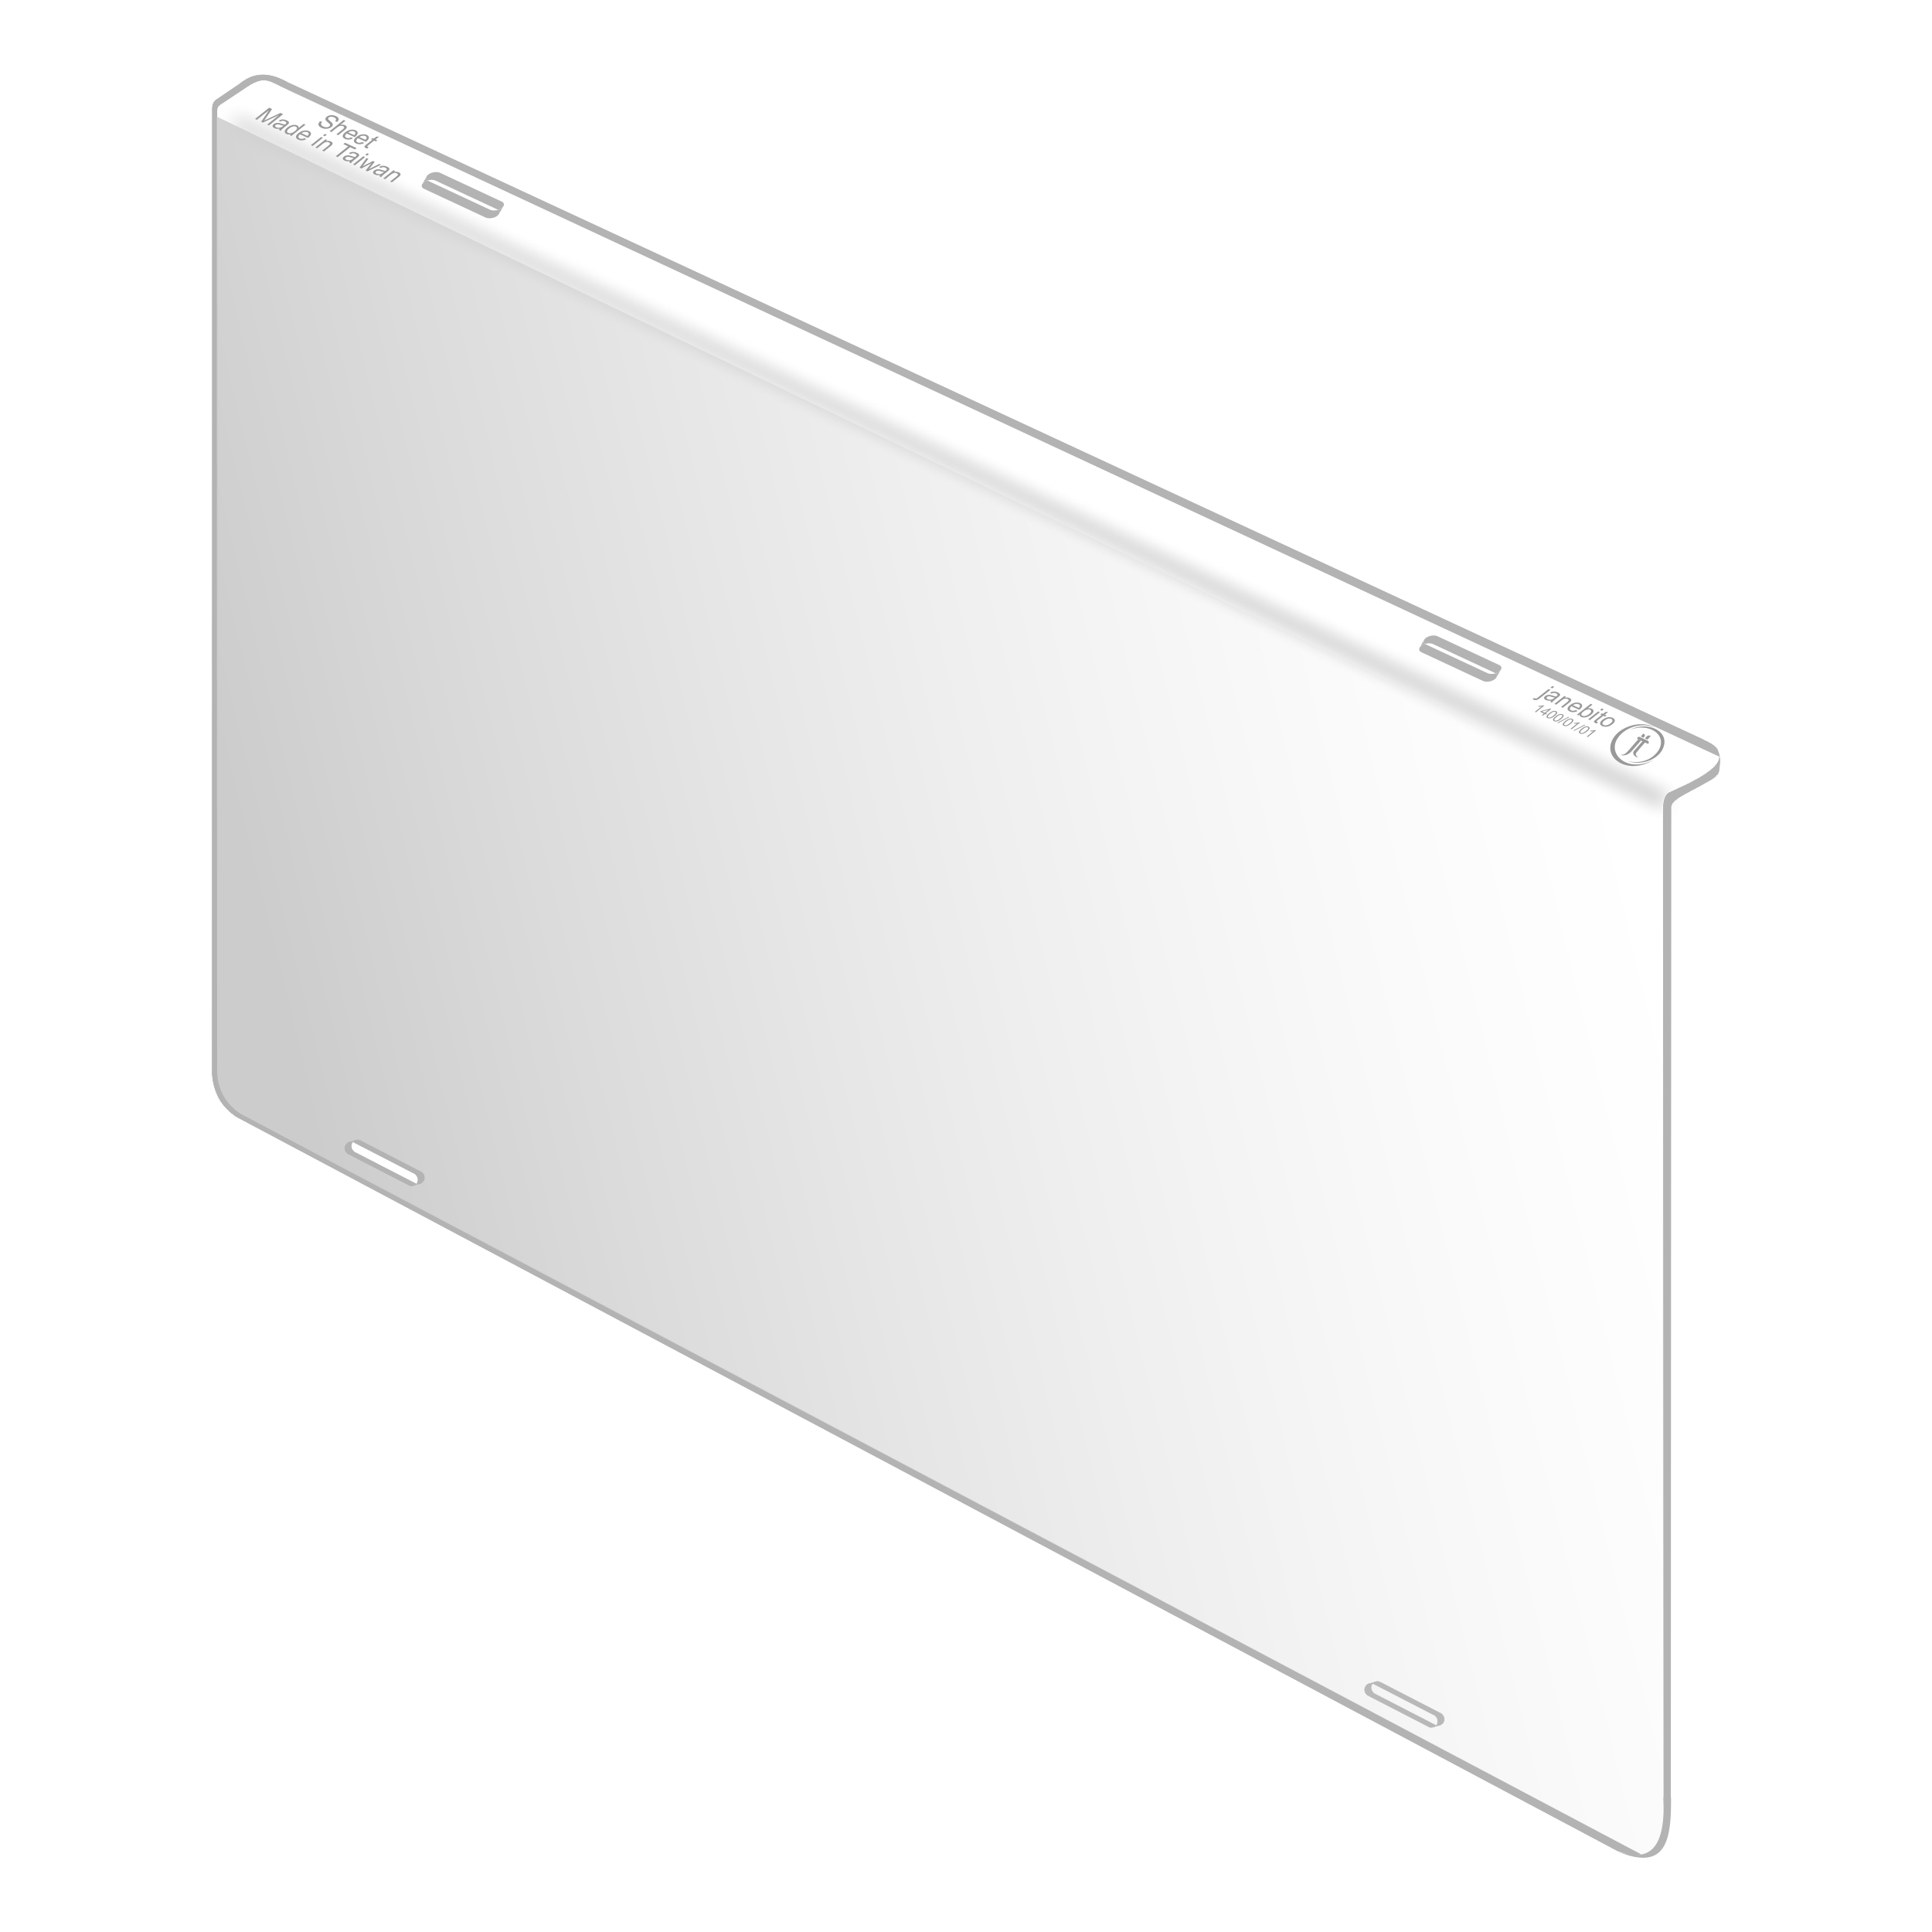 محافظ صفحه نمایش تلویزیون مدل j60 Standard مناسب برای تلویزیون 60 اینچ